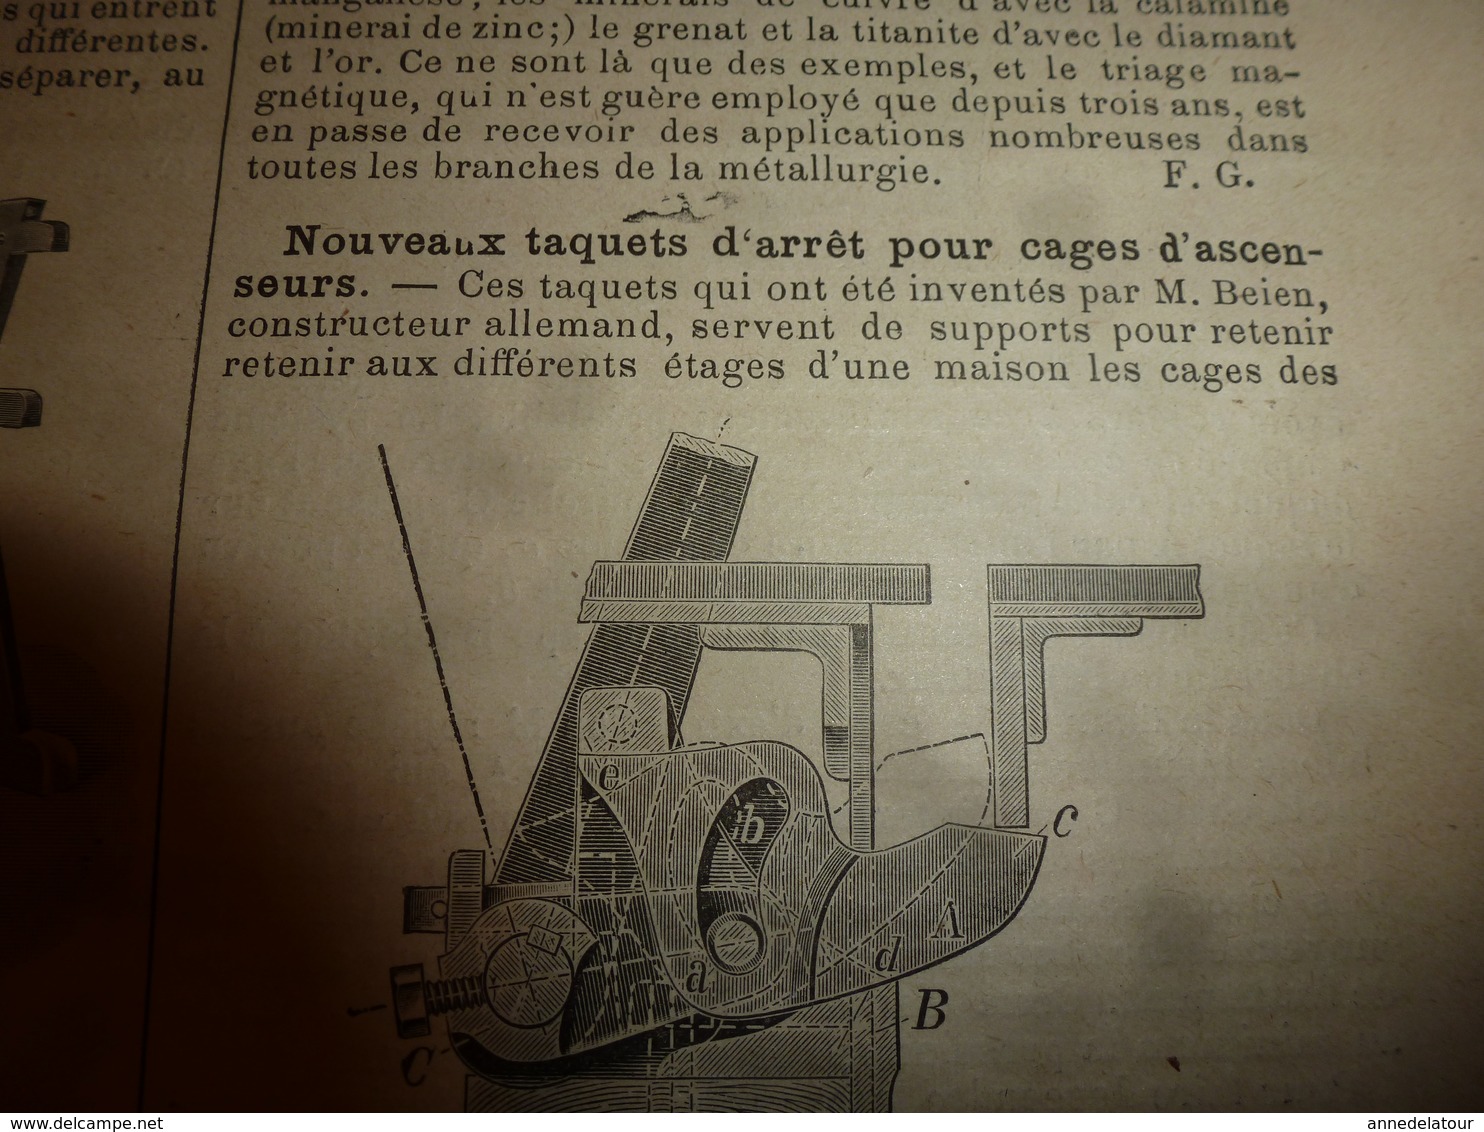 1903 LES INVENTIONS ILLUSTRÉES:Cuirassé SUFFREN;Volière-aquarium;Sécu-ascenseur;Photo-calcographie;Tirelire Secrète;etc - Wissenschaft